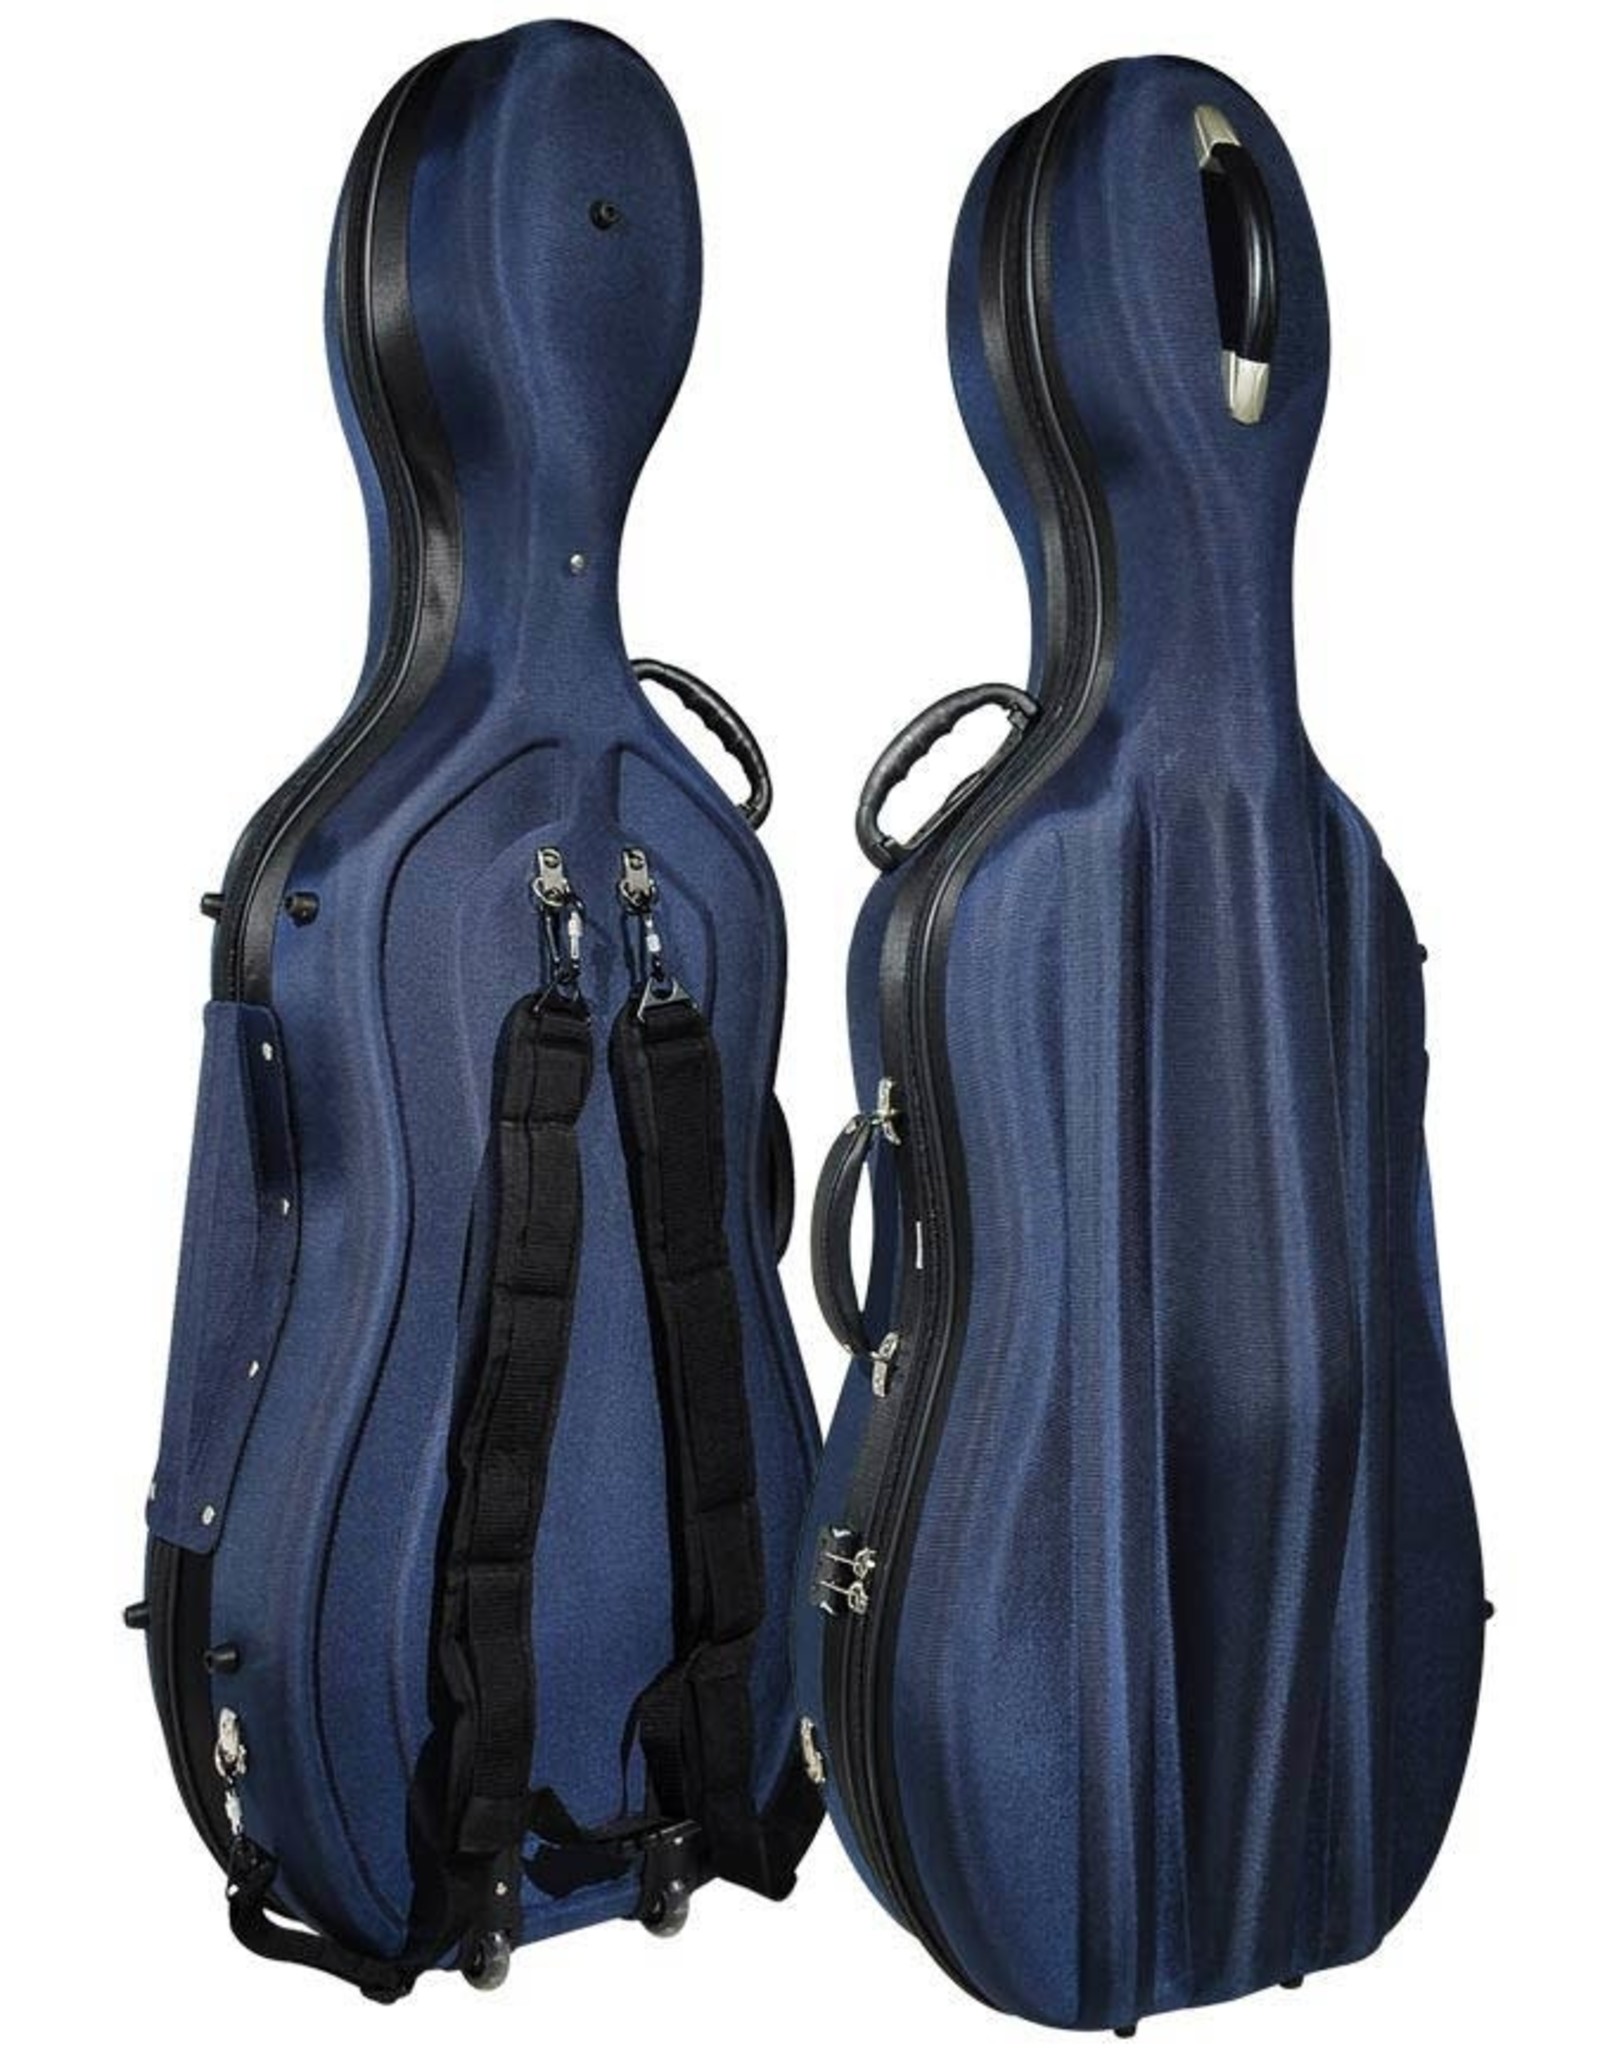 vormkoffer cello, 4/4, zacht schuimrubber, 2 wieltjes, 2 schouderriemen, slot, donkerblauw